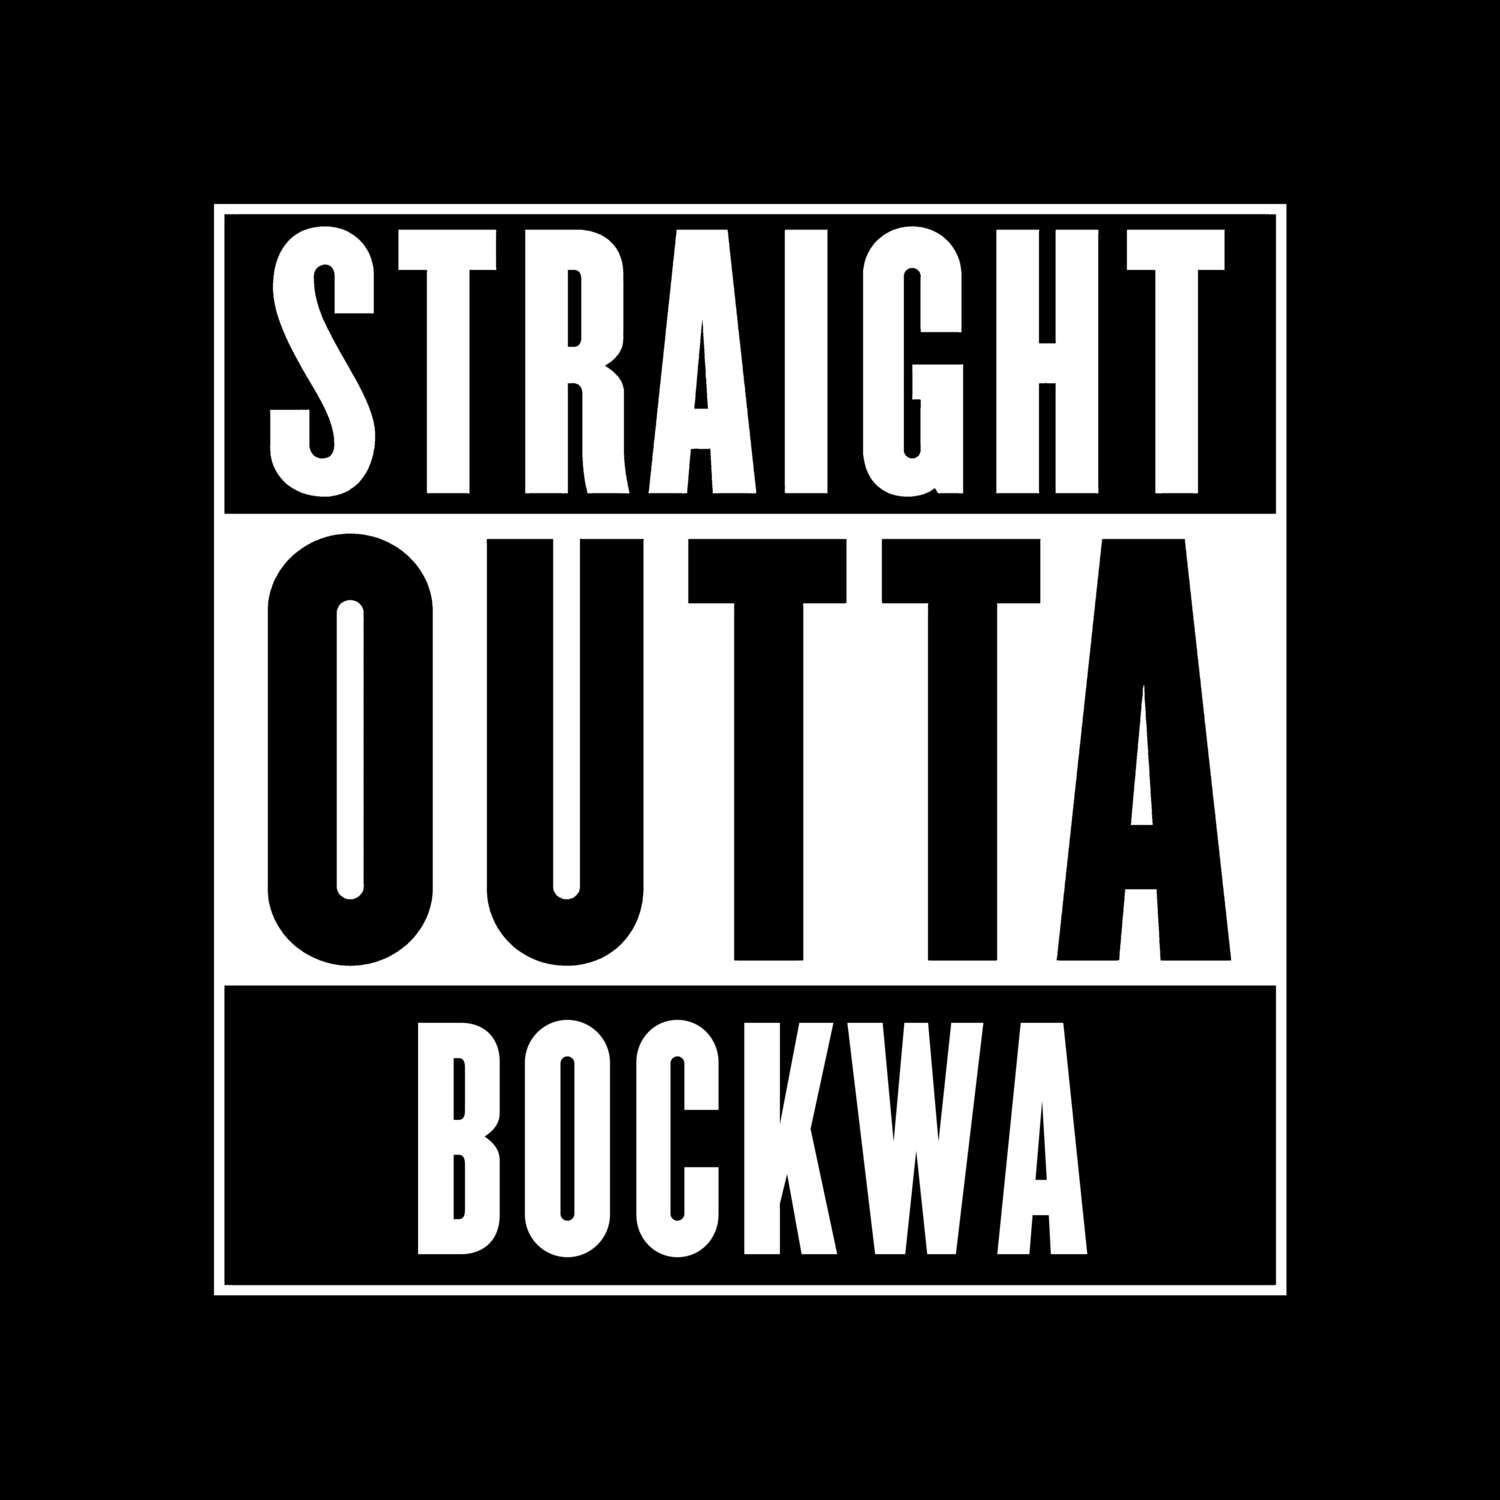 Bockwa T-Shirt »Straight Outta«